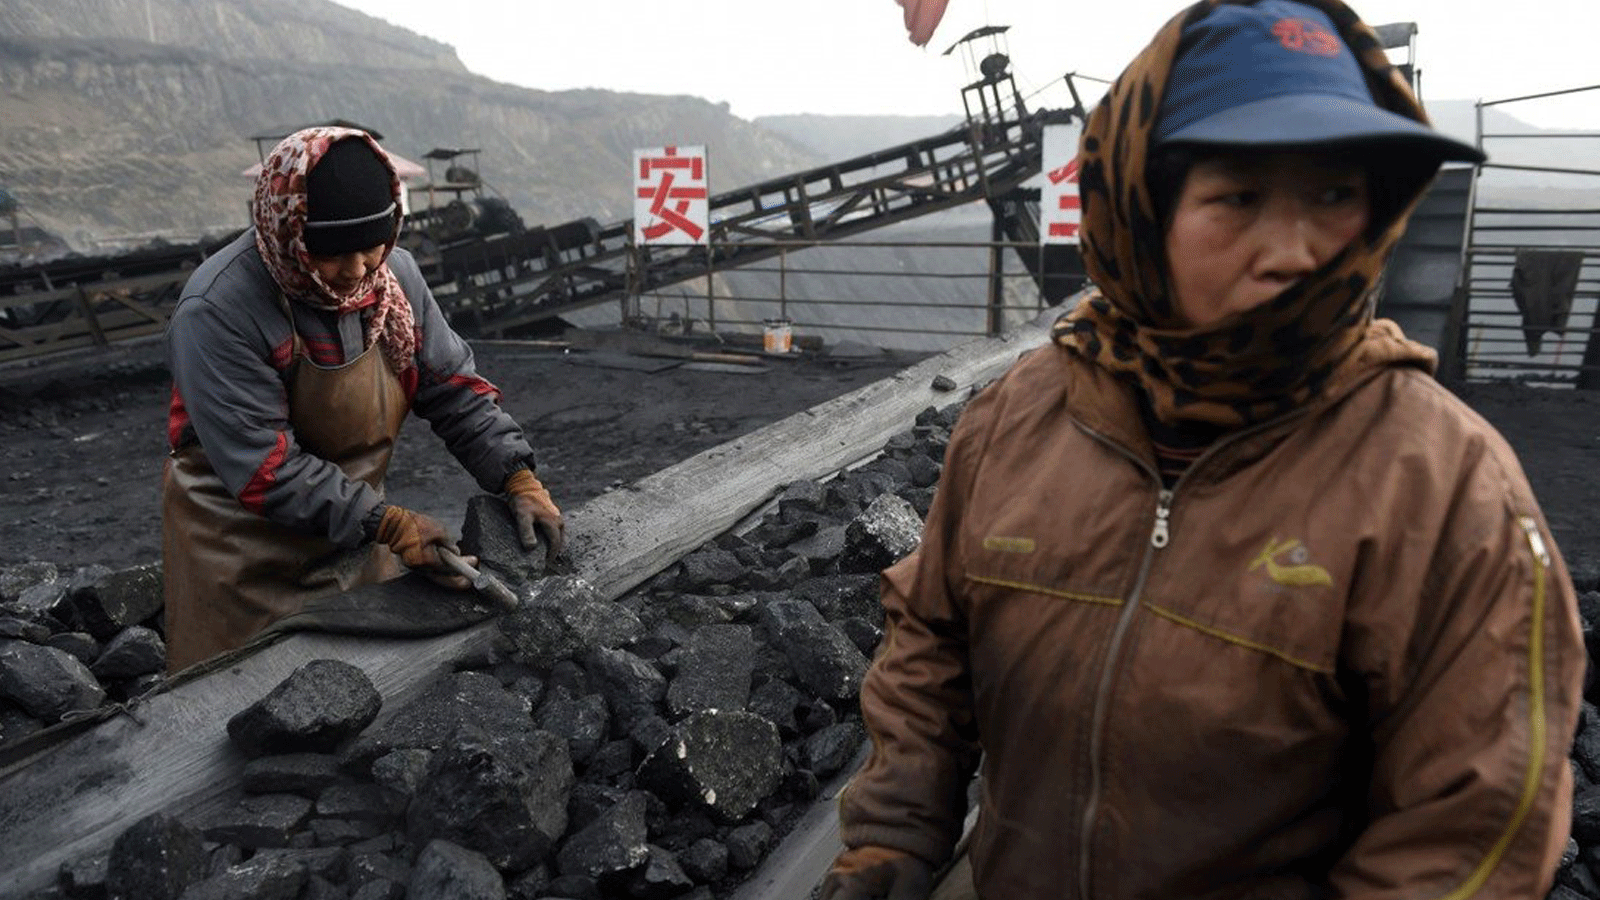 أحد مناجم الفحم التي تم إغلاقها في الصين بعد سلسلة من الكوارث قبيل الاستعداد للاحتفال بالذكرى المئوية للحزب الحاكم في 1 تموز/يوليو 2021